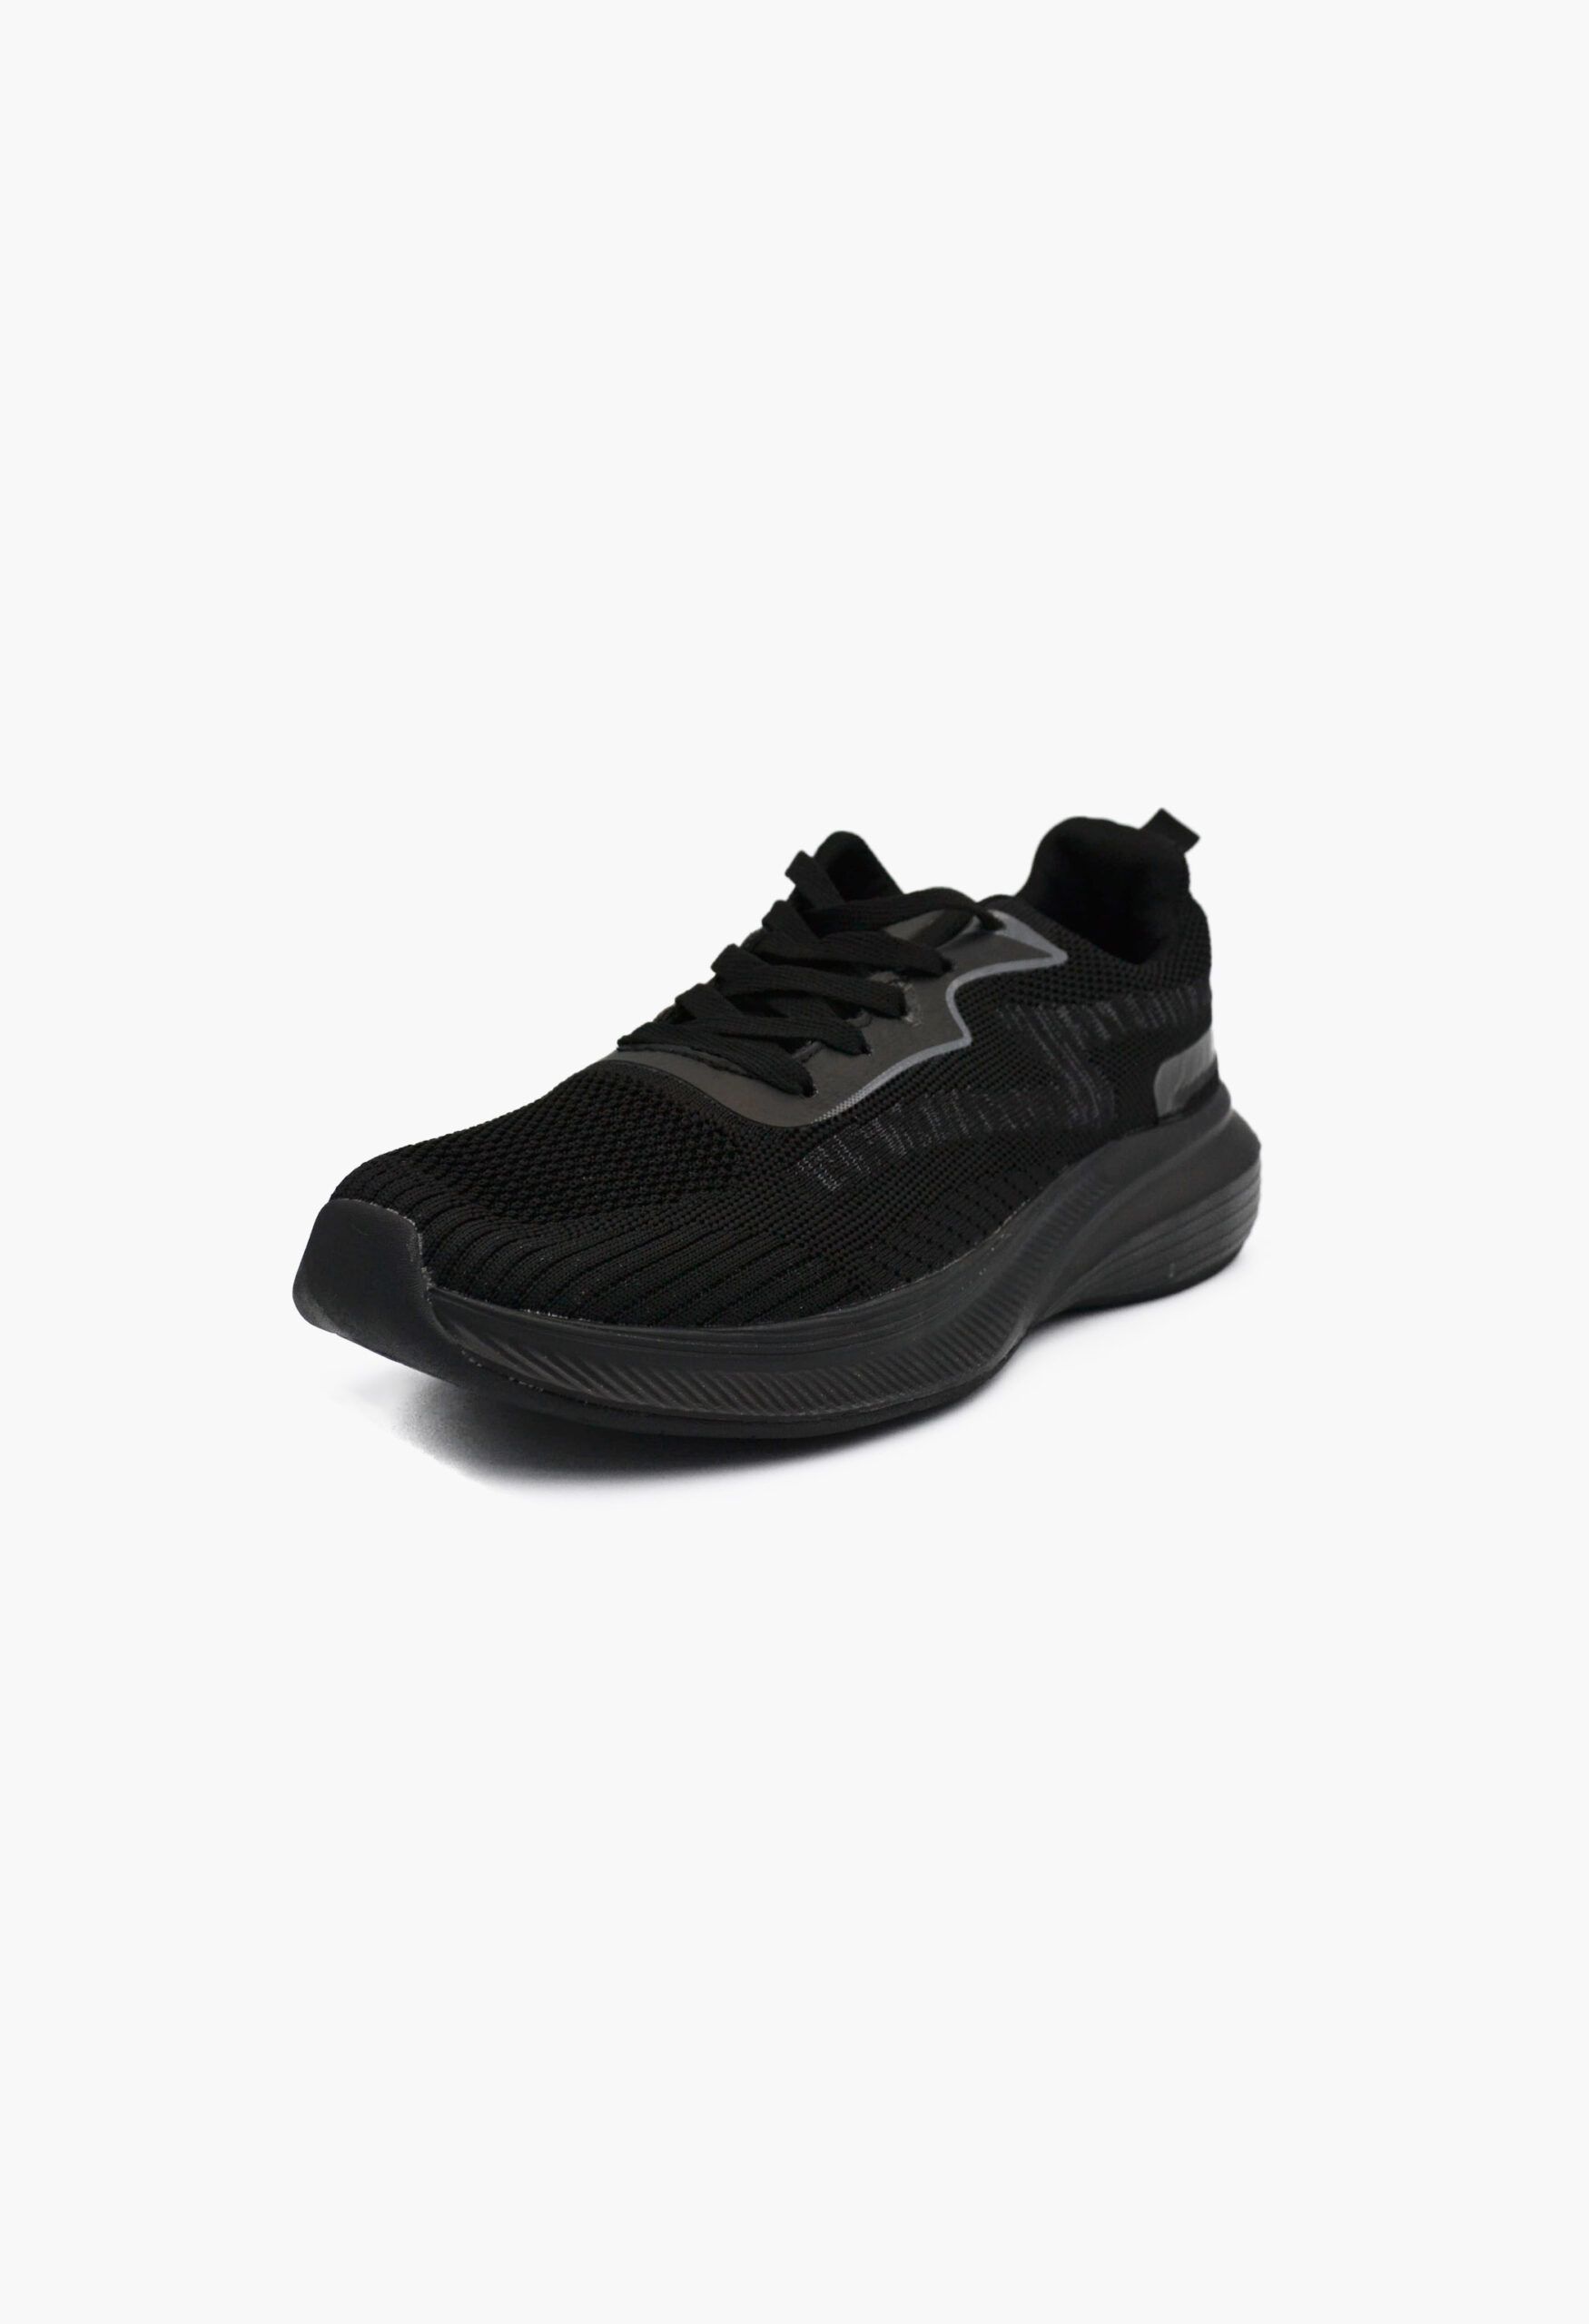 Ανδρικά Αθλητικά Παπούτσια για Τρέξιμο Μαύρο / A-35-black/dark-grey ΑΘΛΗΤΙΚΑ & SNEAKERS joya.gr